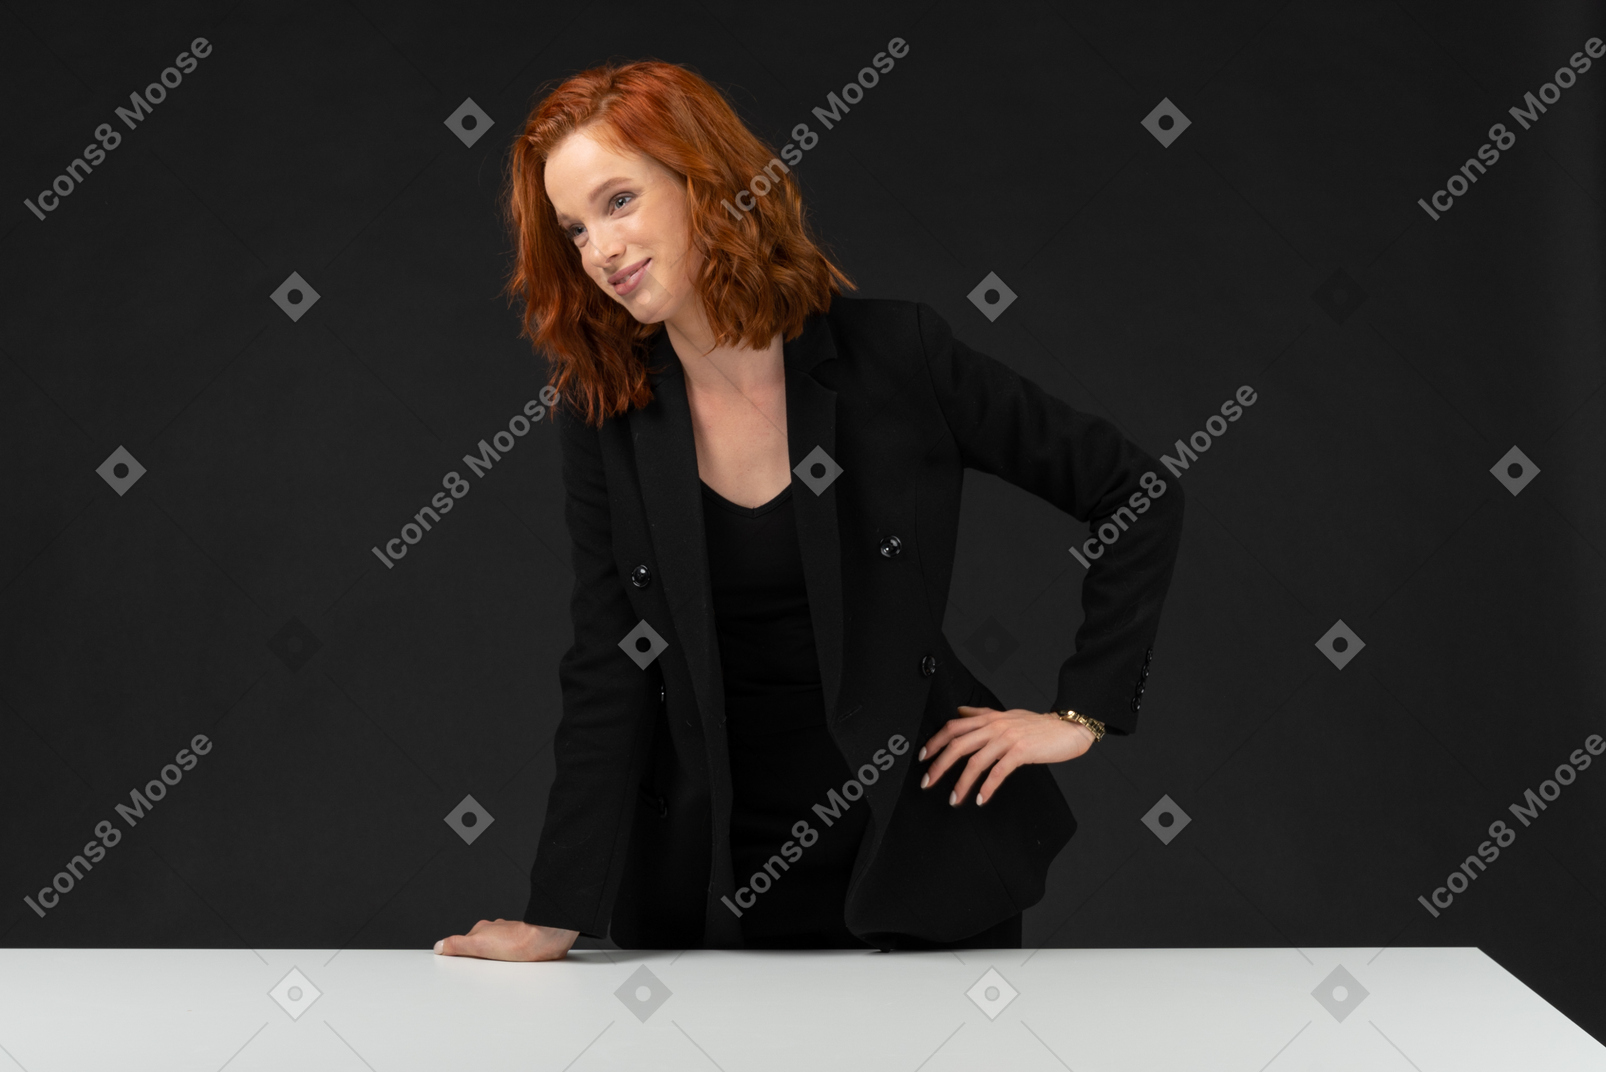 검은 옷을 입고 테이블에 서있는 아름다운 웃는 여자